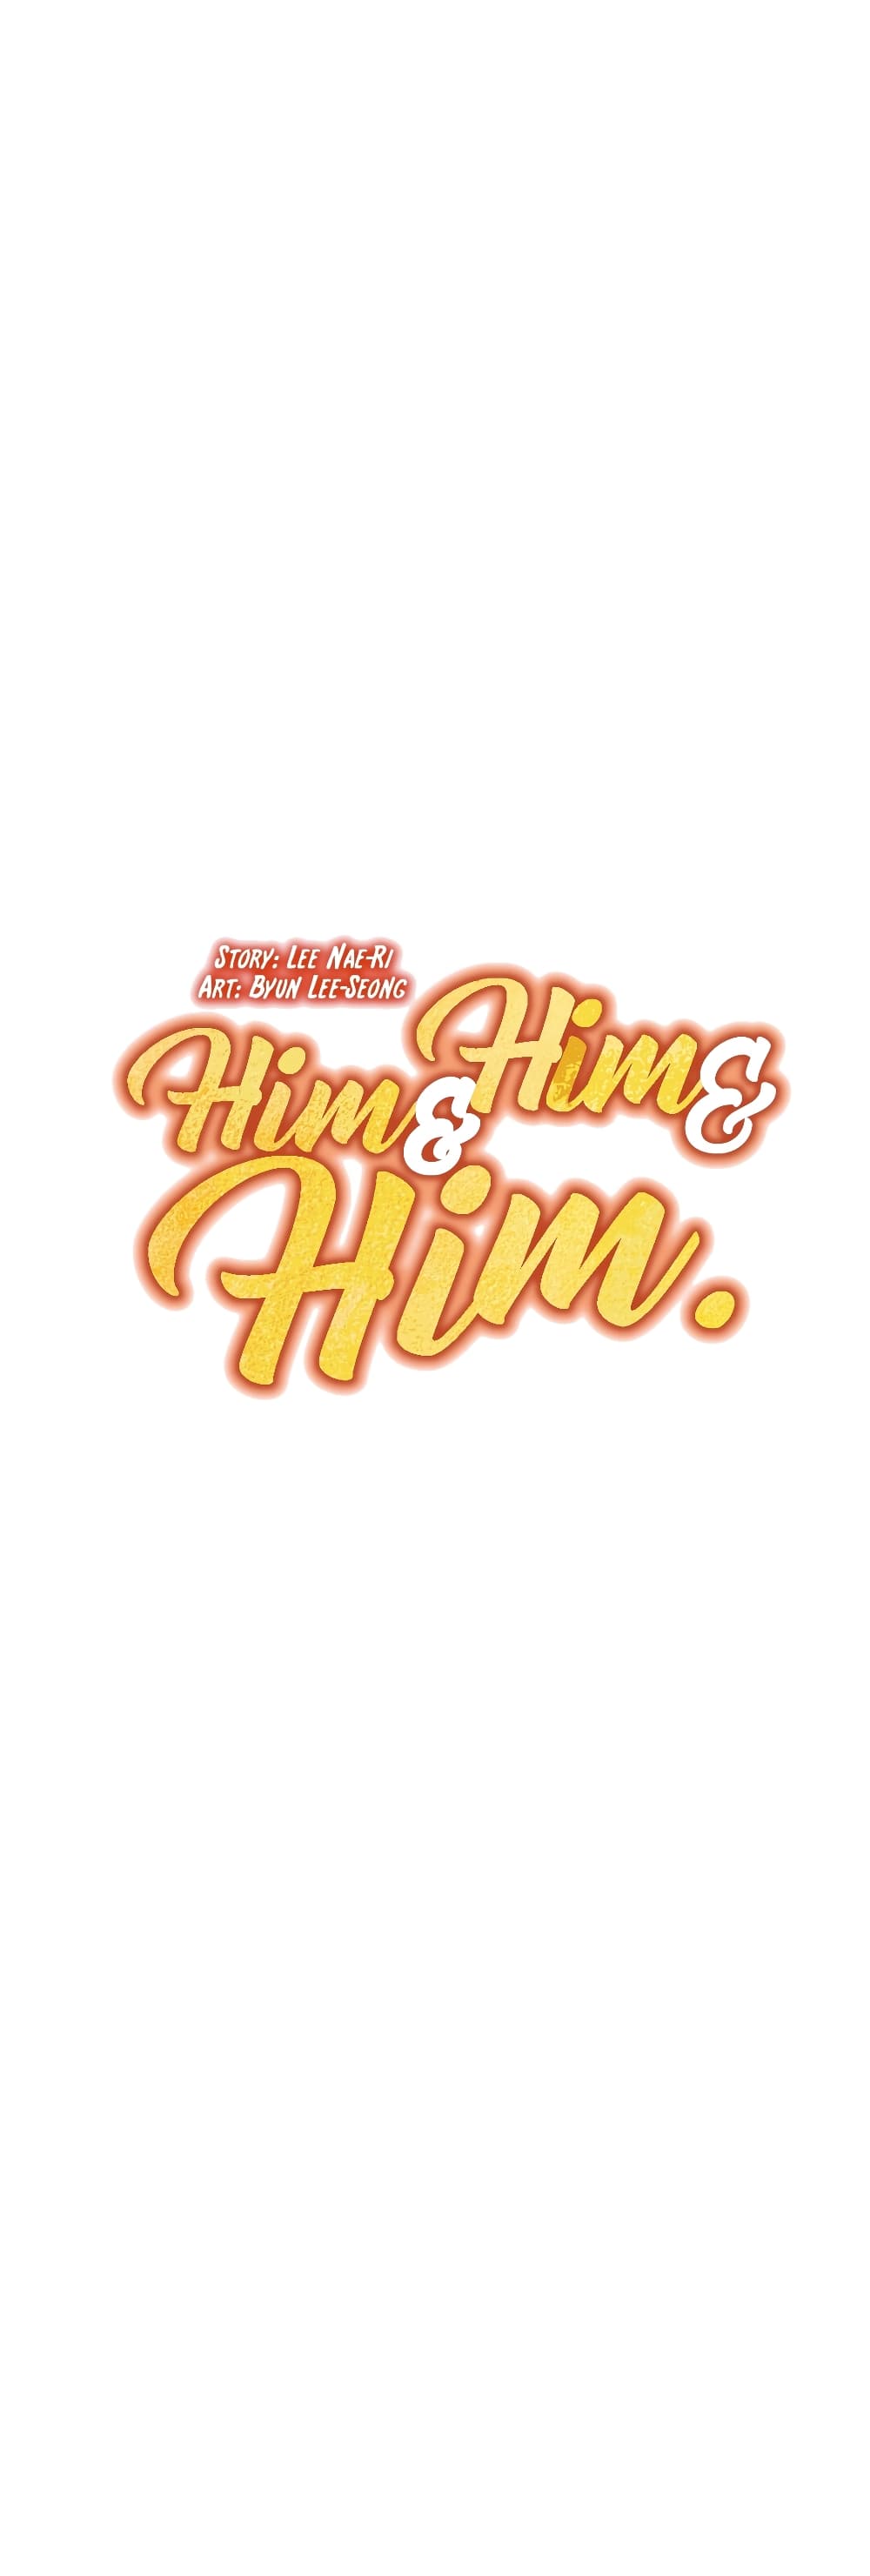 Him & Him & Him4 (3)